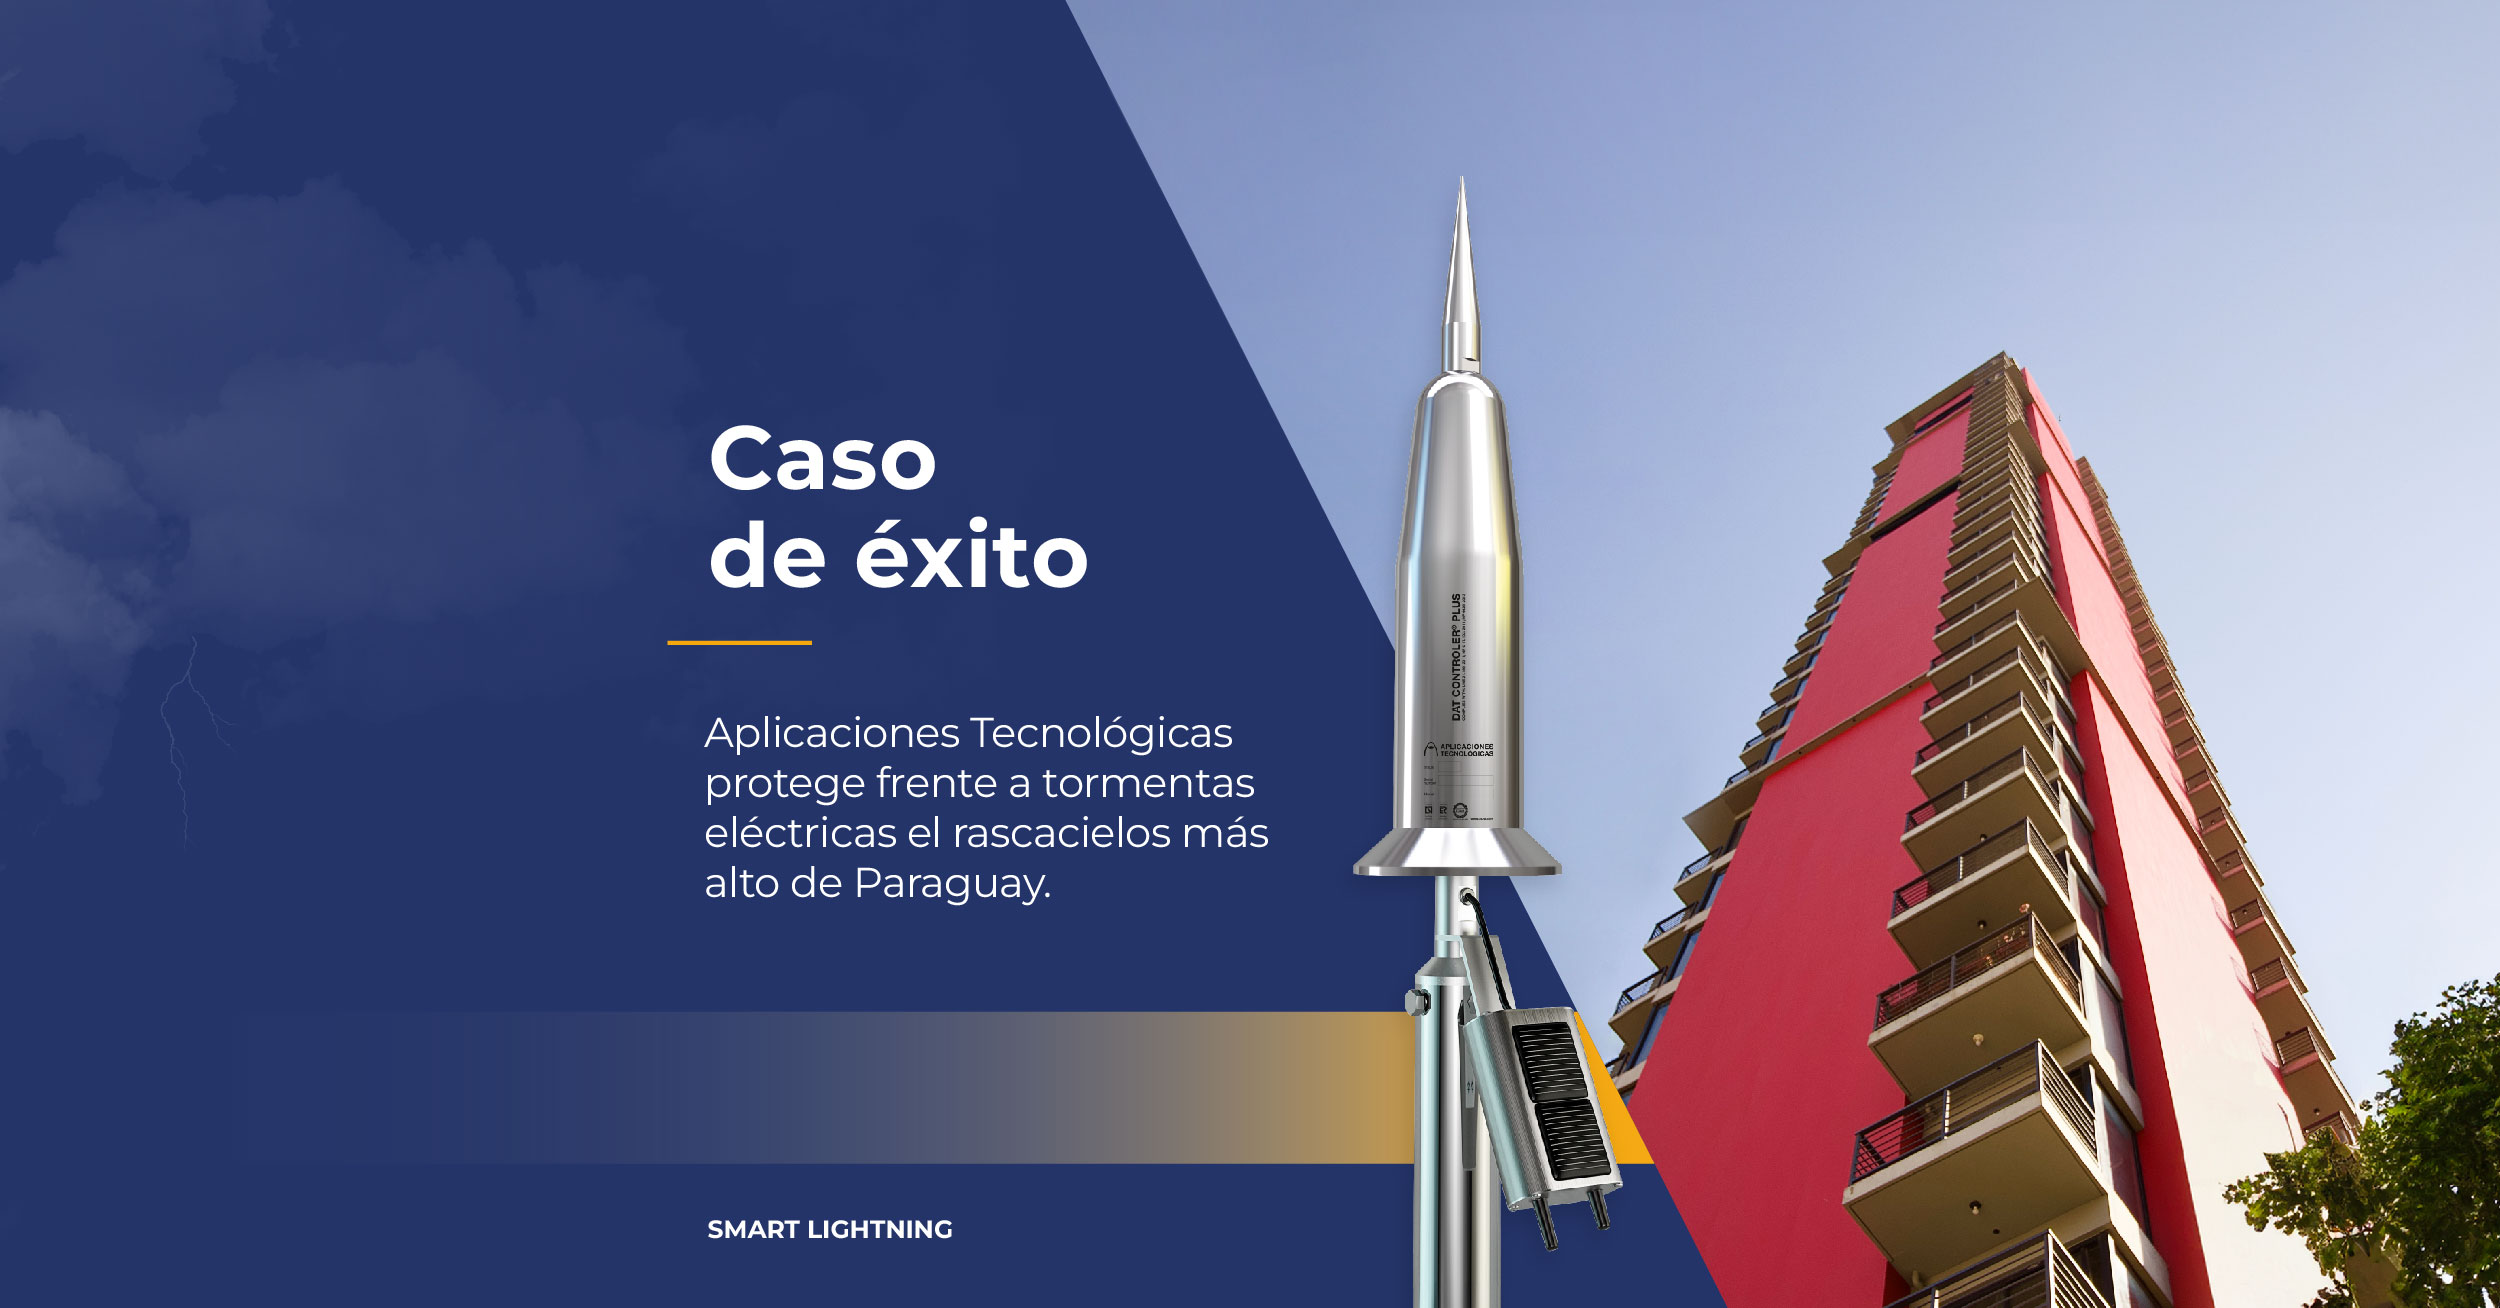 pararrayos-pdc-rascacielos-asuncion-paraguay-aplicaciones-tecnologicas